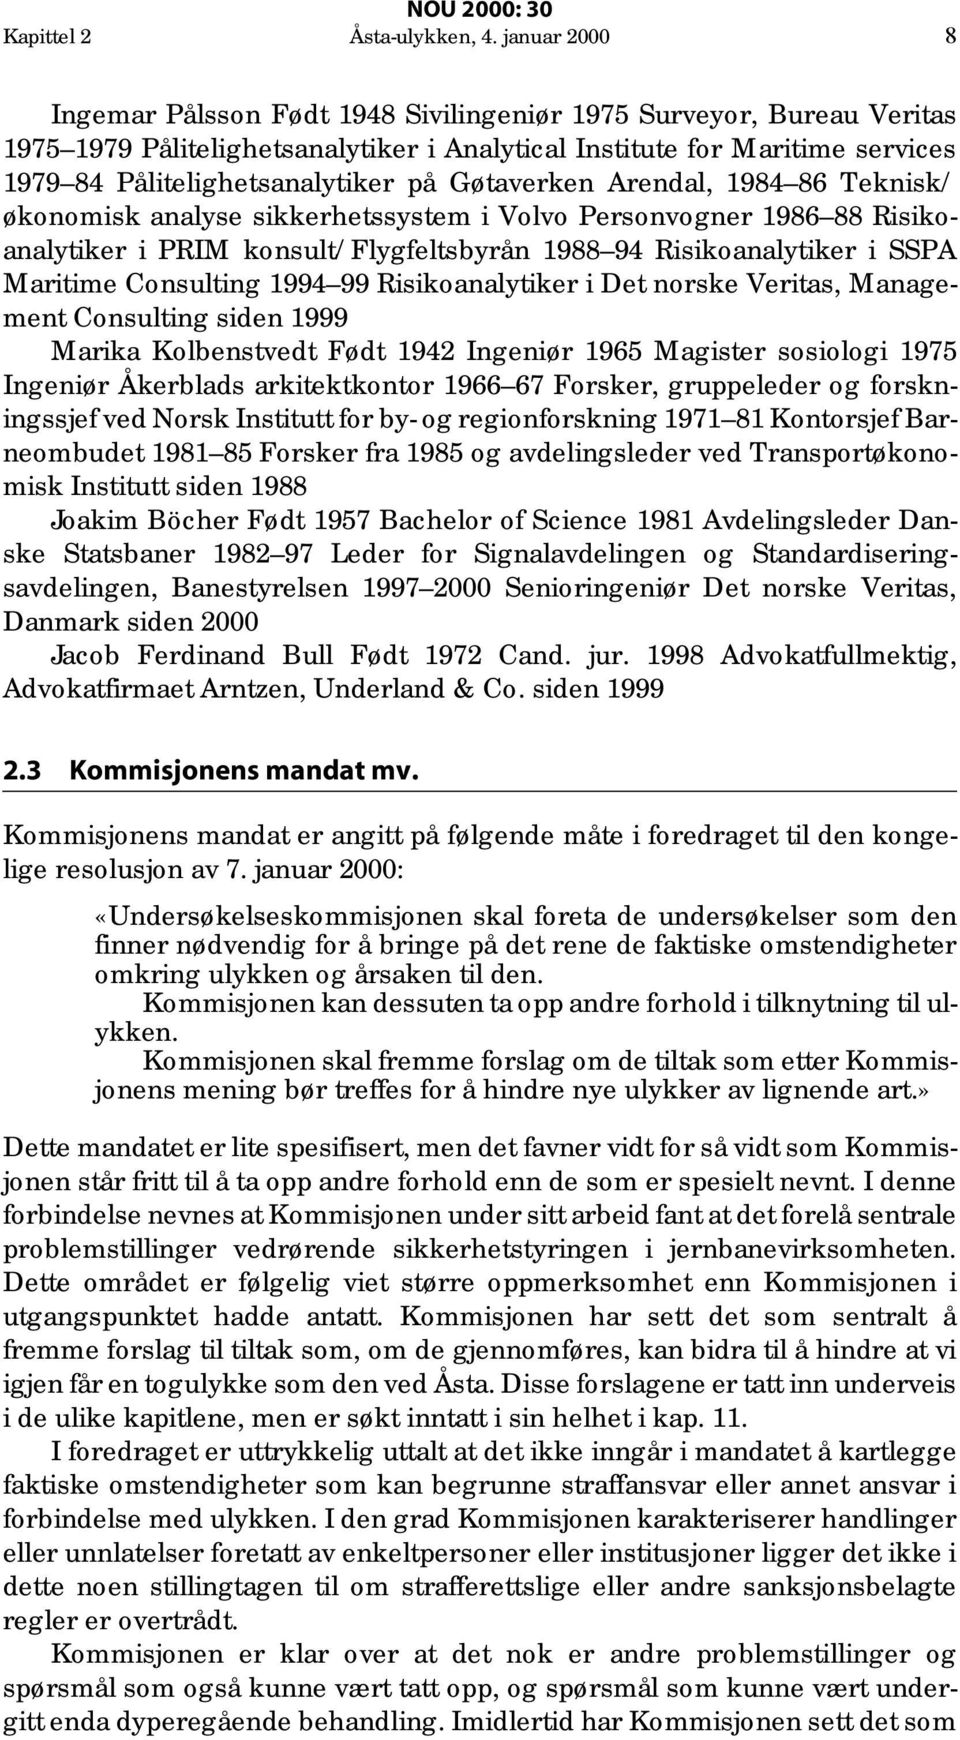 Gøtaverken Arendal, 1984 86 Teknisk/ økonomisk analyse sikkerhetssystem i Volvo Personvogner 1986 88 Risikoanalytiker i PRIM konsult/flygfeltsbyrån 1988 94 Risikoanalytiker i SSPA Maritime Consulting